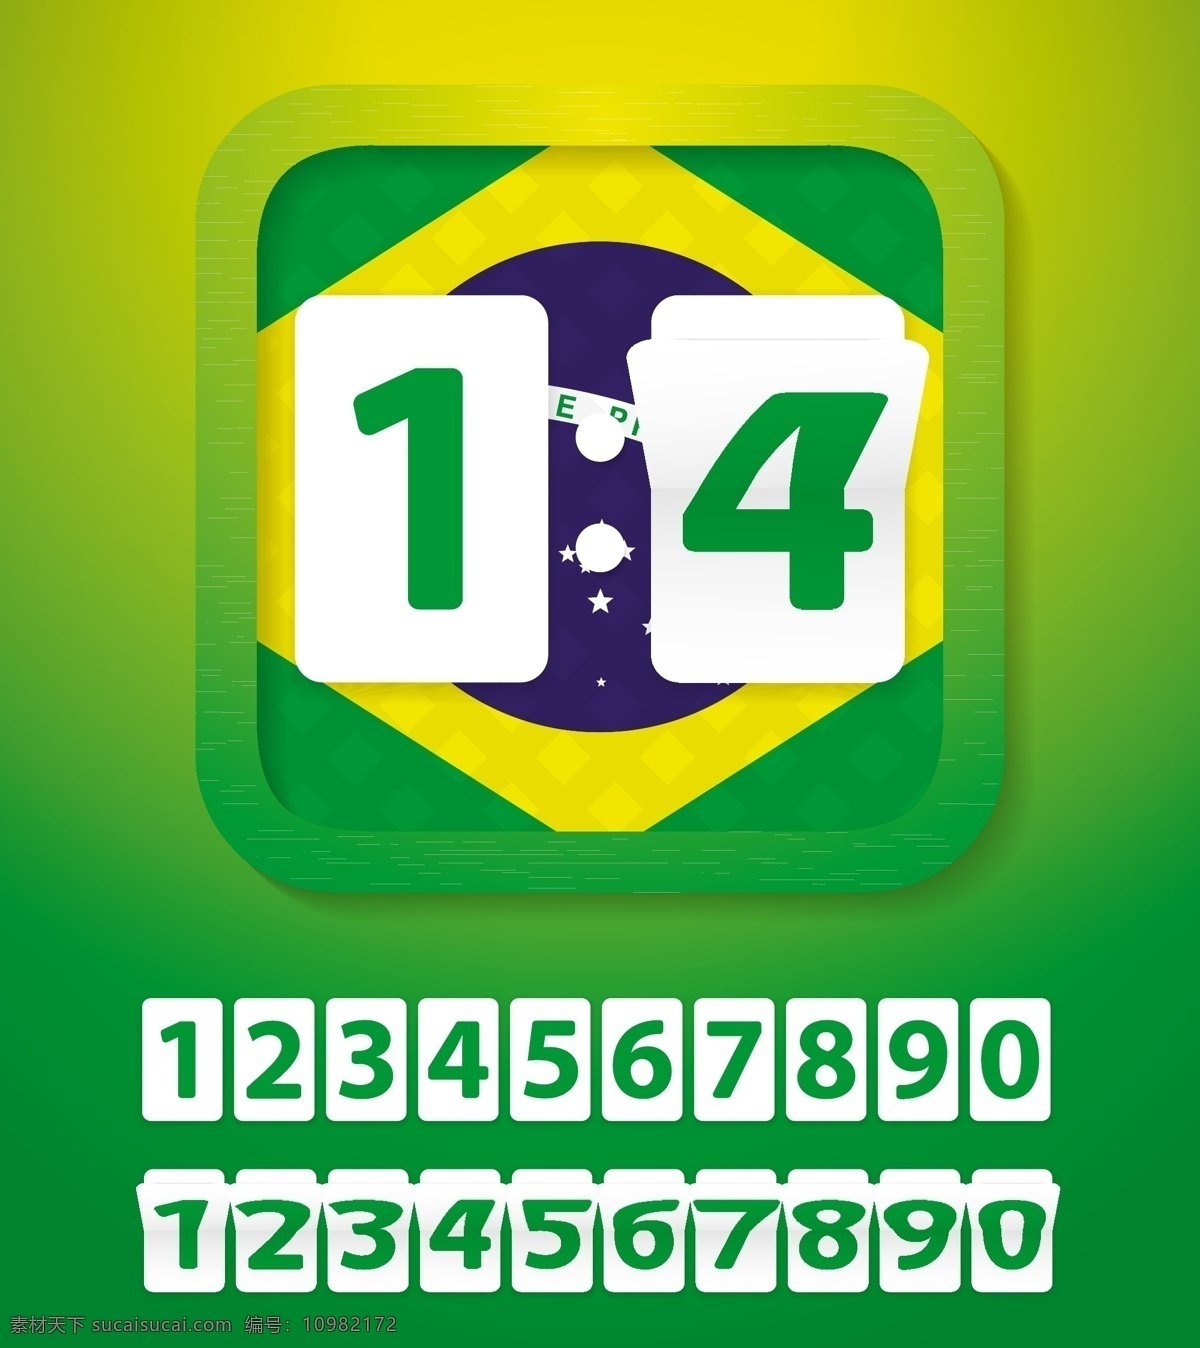 巴西 足球 世界杯 比分 模板下载 世界杯主题 世界杯球赛 体育运动 生活百科 矢量素材 绿色